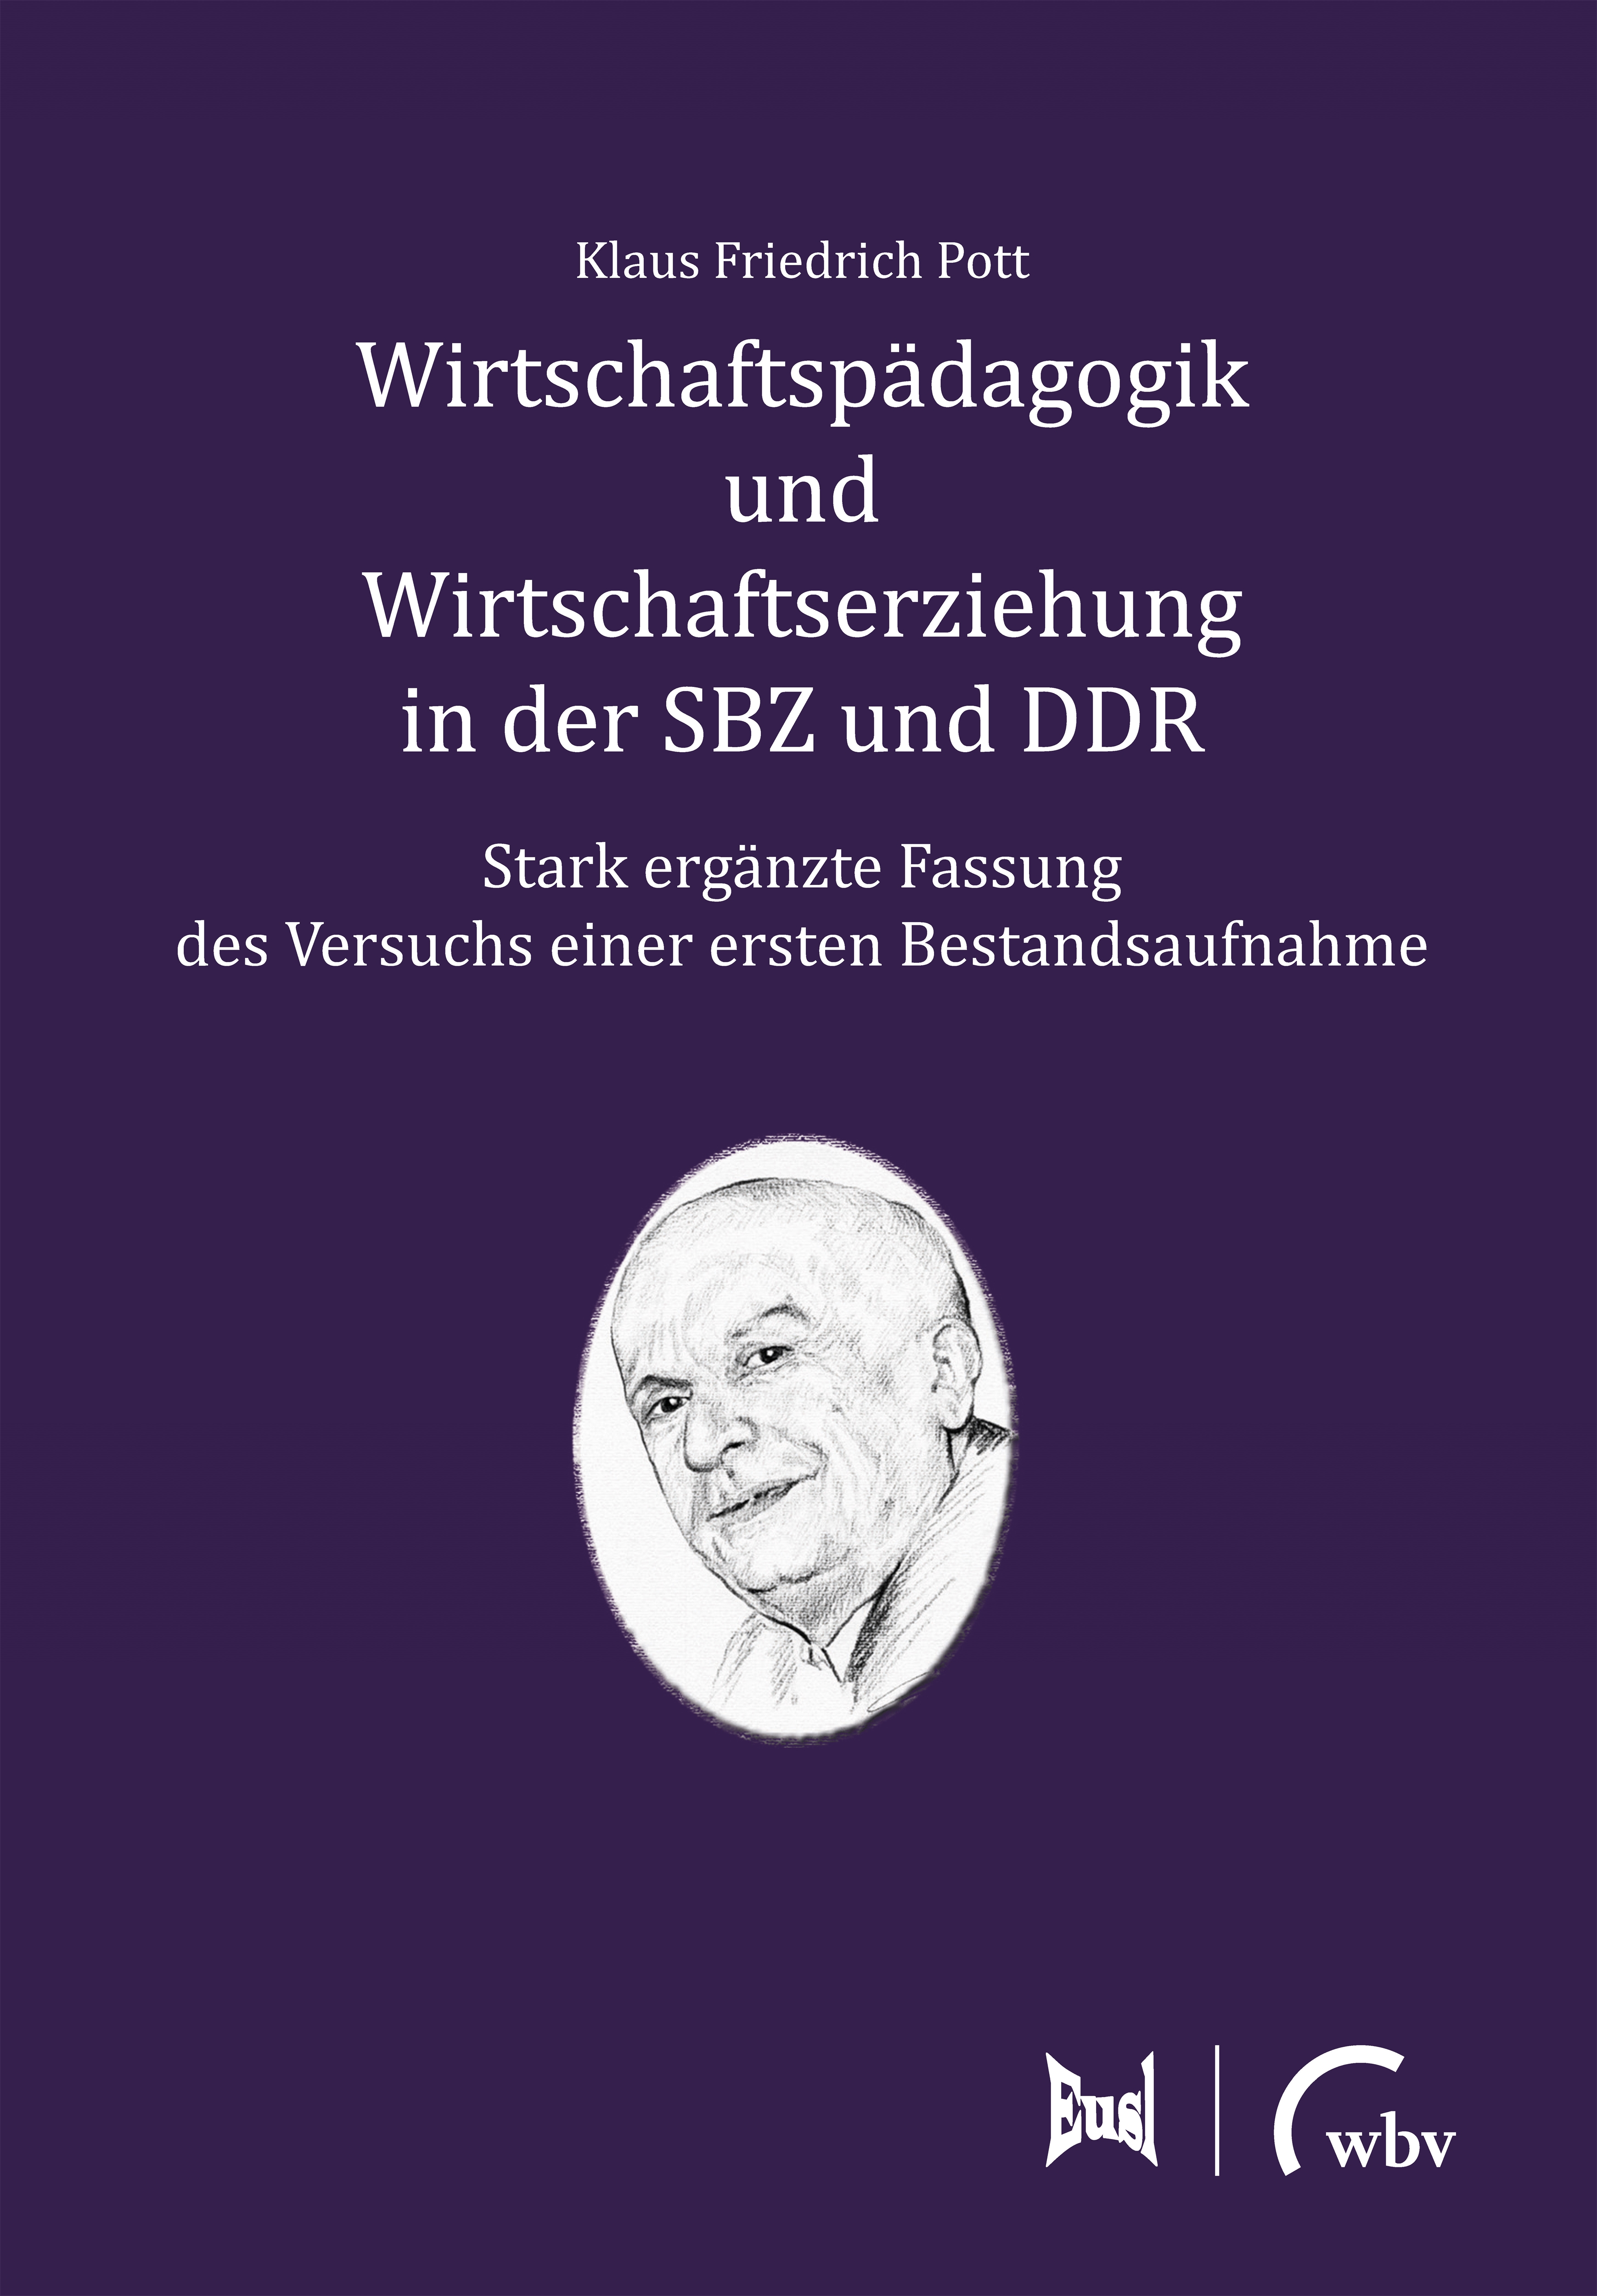 Wirtschaftspädagogik und Wirtschaftserziehung in der SBZ und DDR